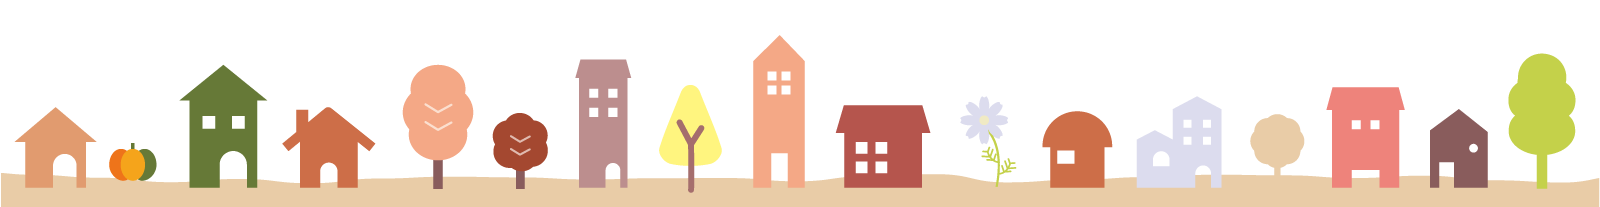 家が並ぶイラスト画像